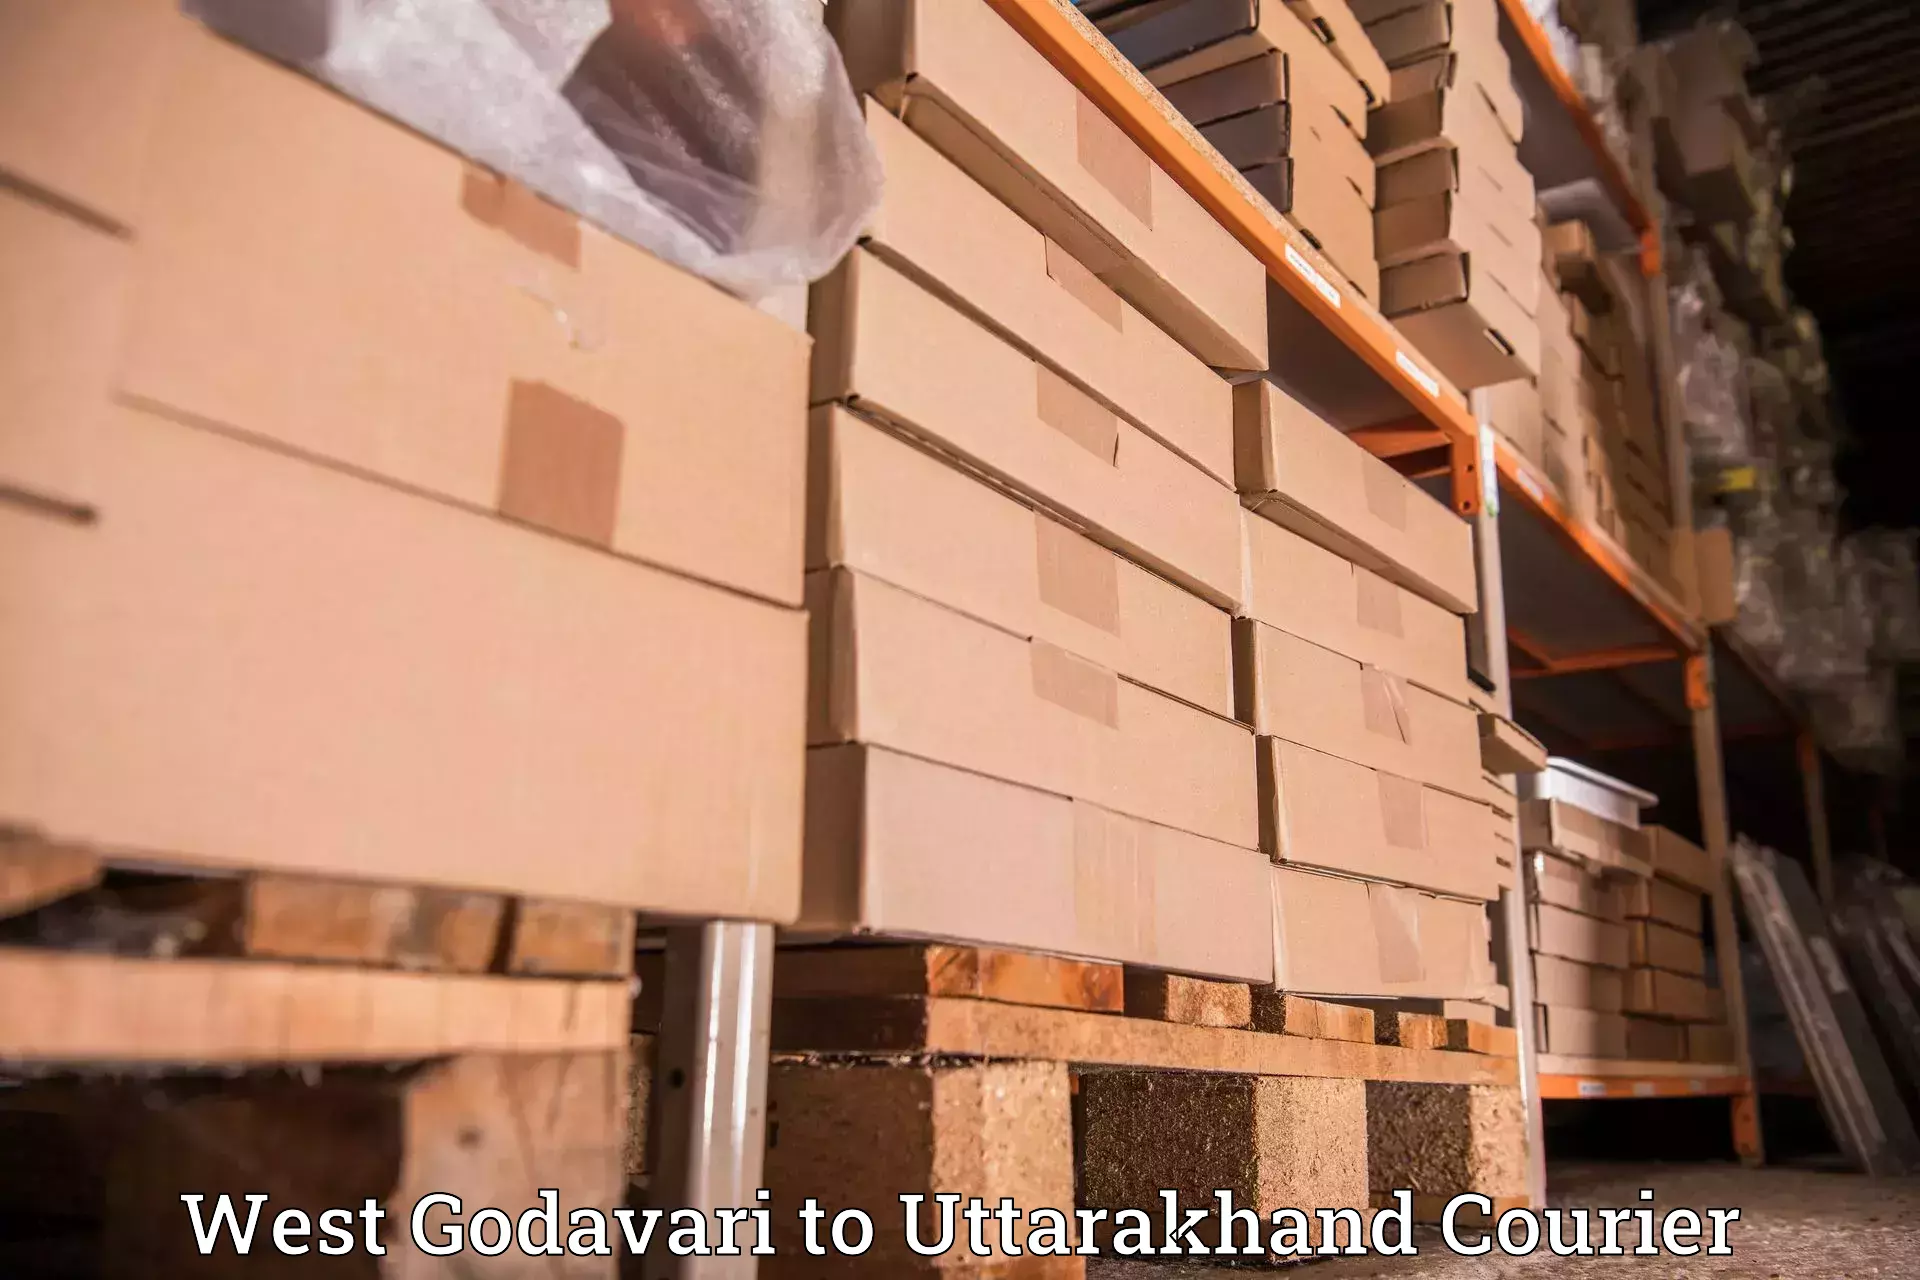 Specialized shipment handling West Godavari to Ranikhet